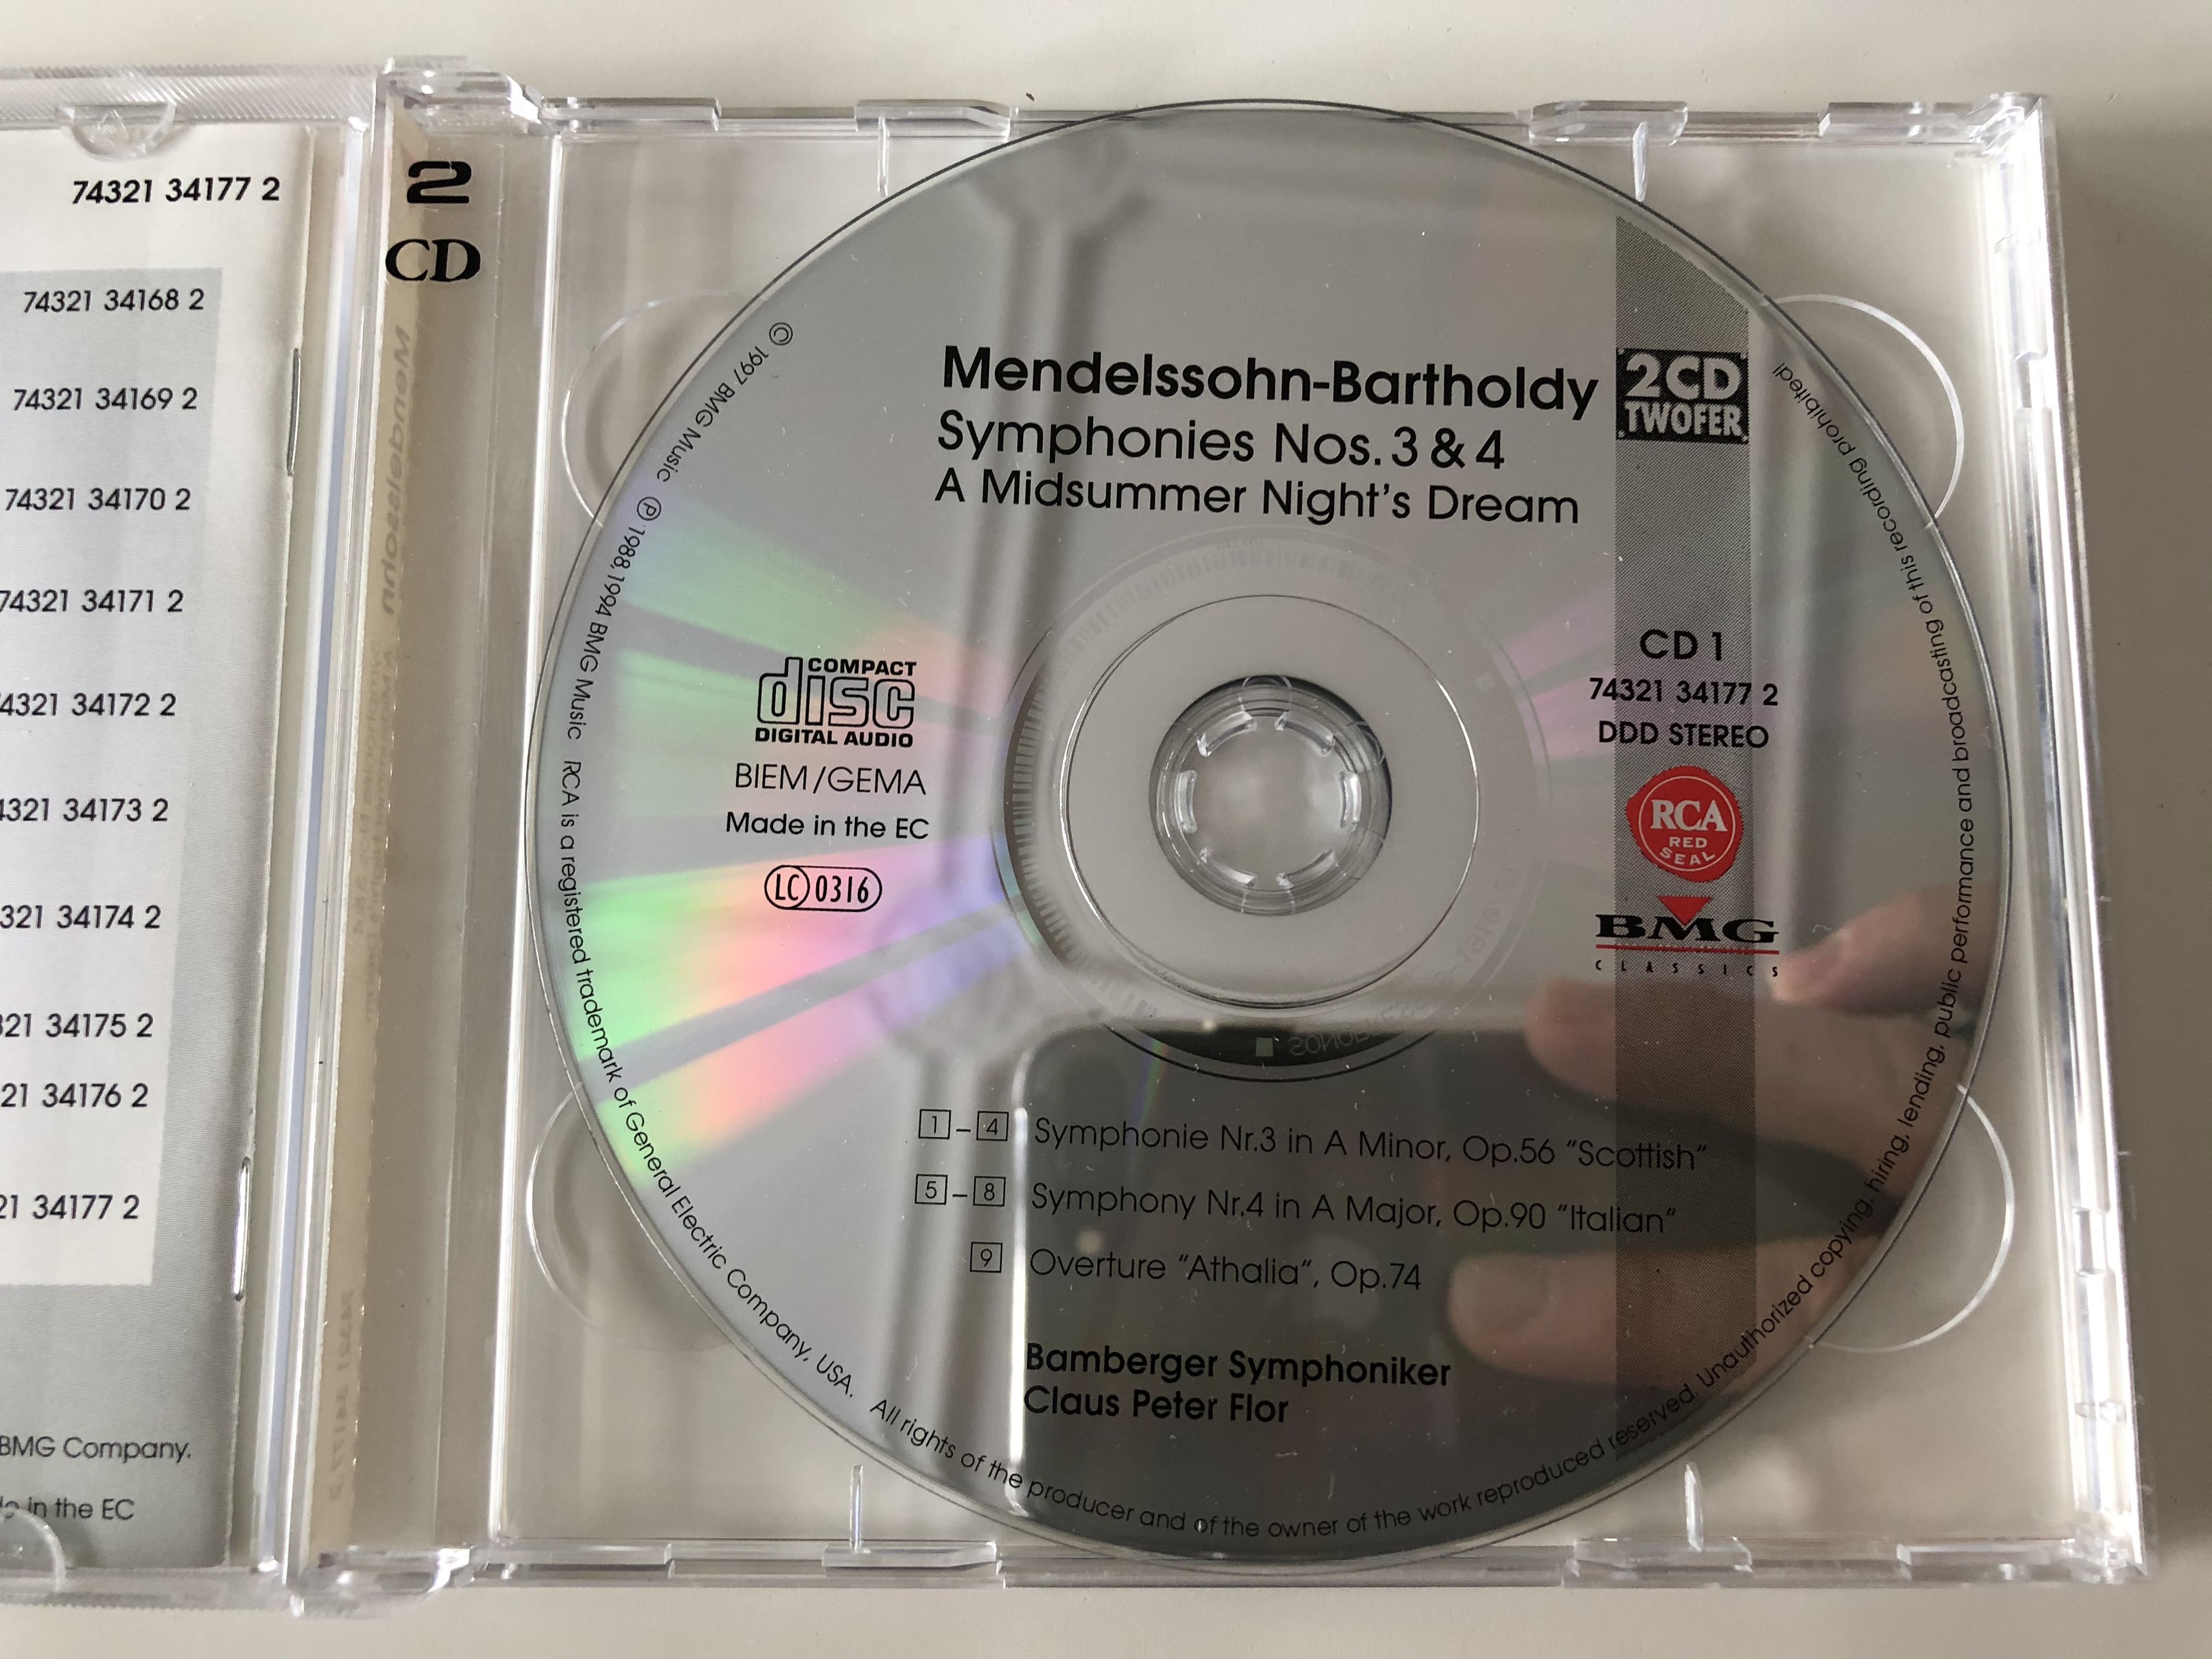 felix-mendelssohn-bartholdy-symphonies-nos.-3-4-a-midsummer-night-s-dream-bamberger-symphoniker-claus-peter-flor-bmg-music-2x-audio-cd-1997-stereo-74321-34177-2-8-.jpg